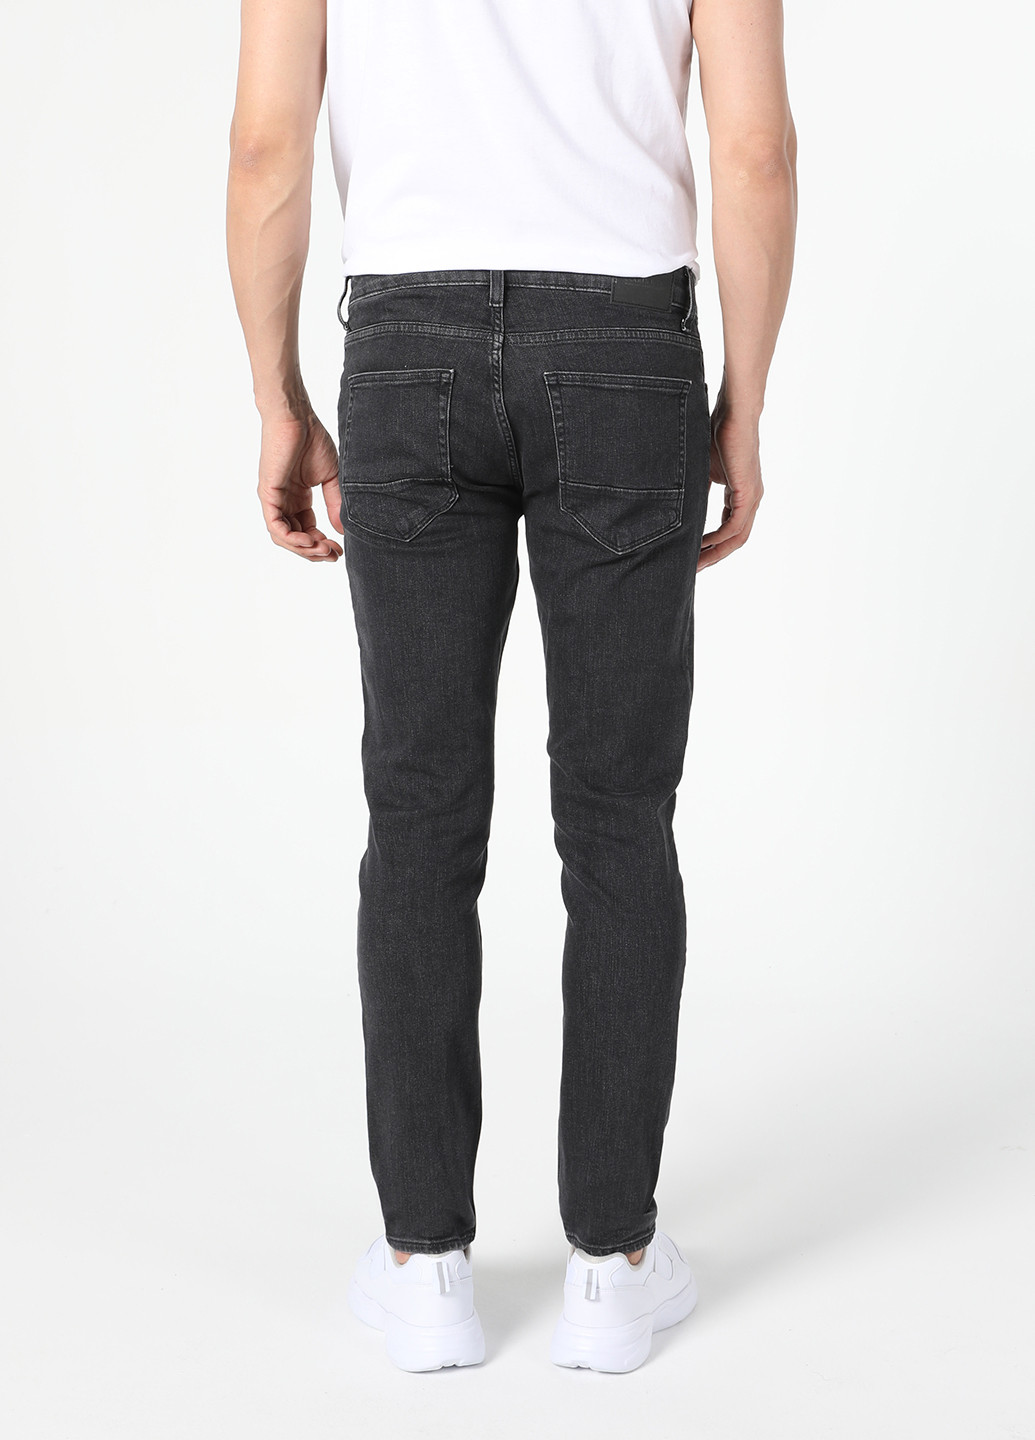 Черные демисезонные зауженные джинсы Colin's